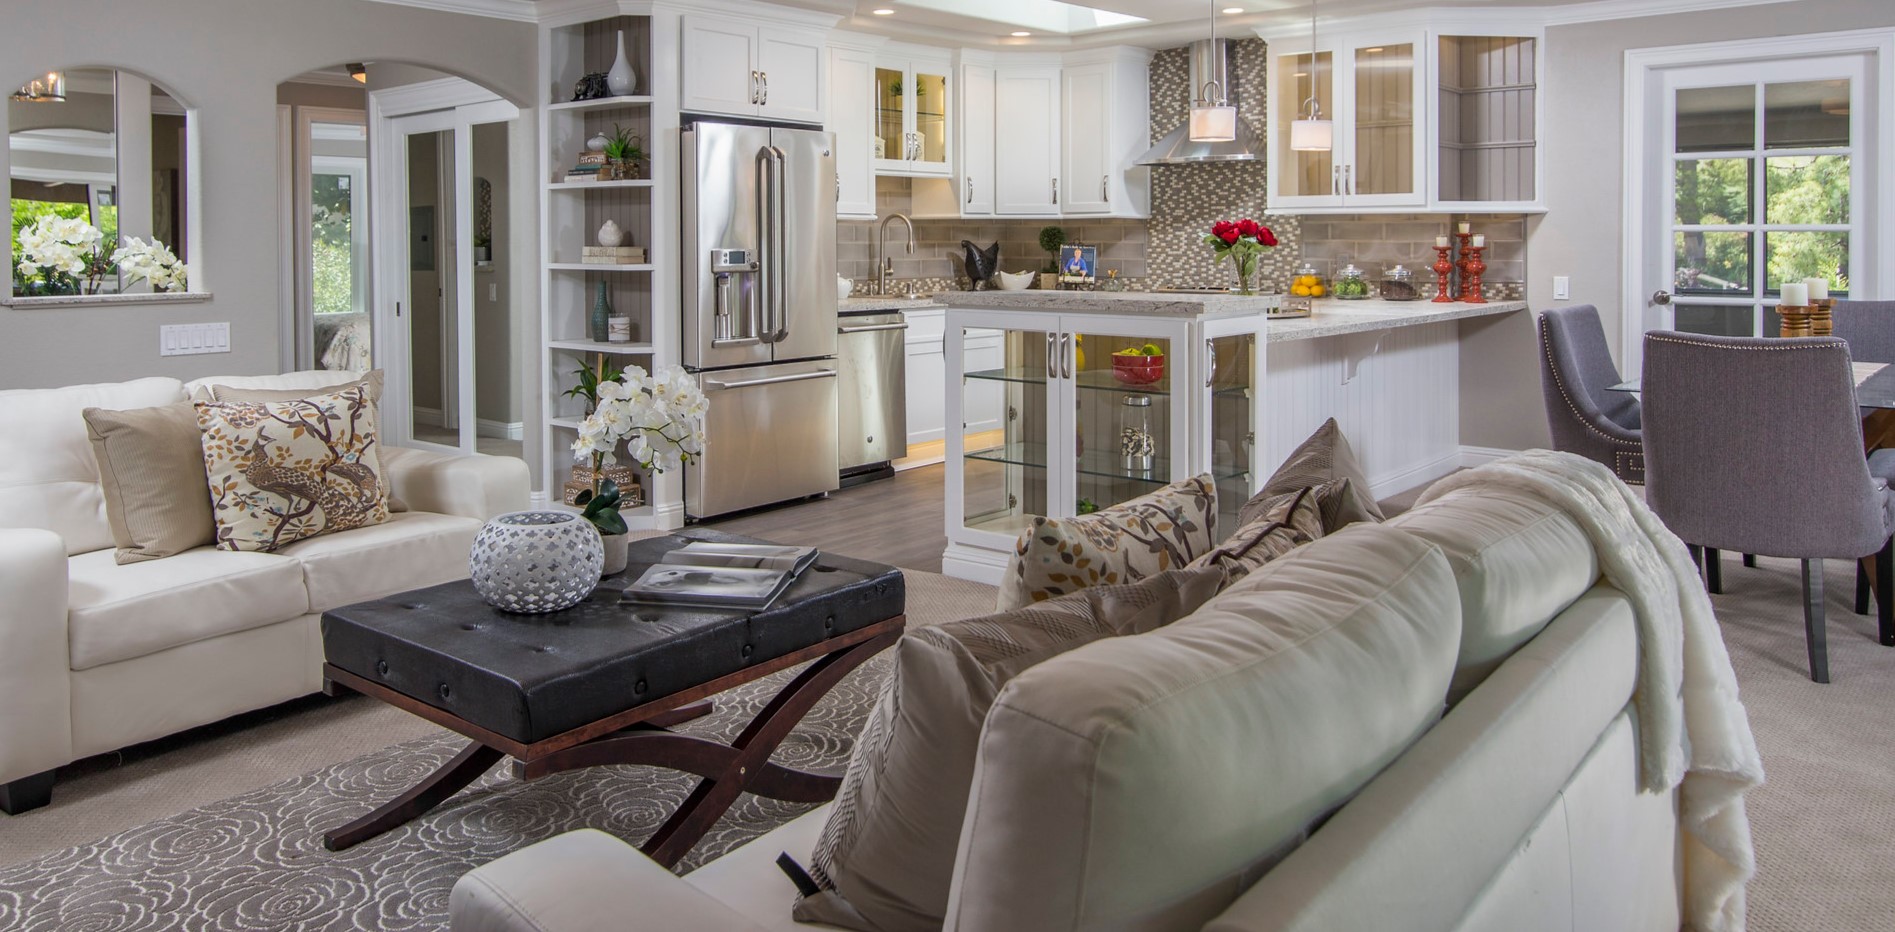 Из двух небольших диванов можно сделают уютную зону отдыха на кухне